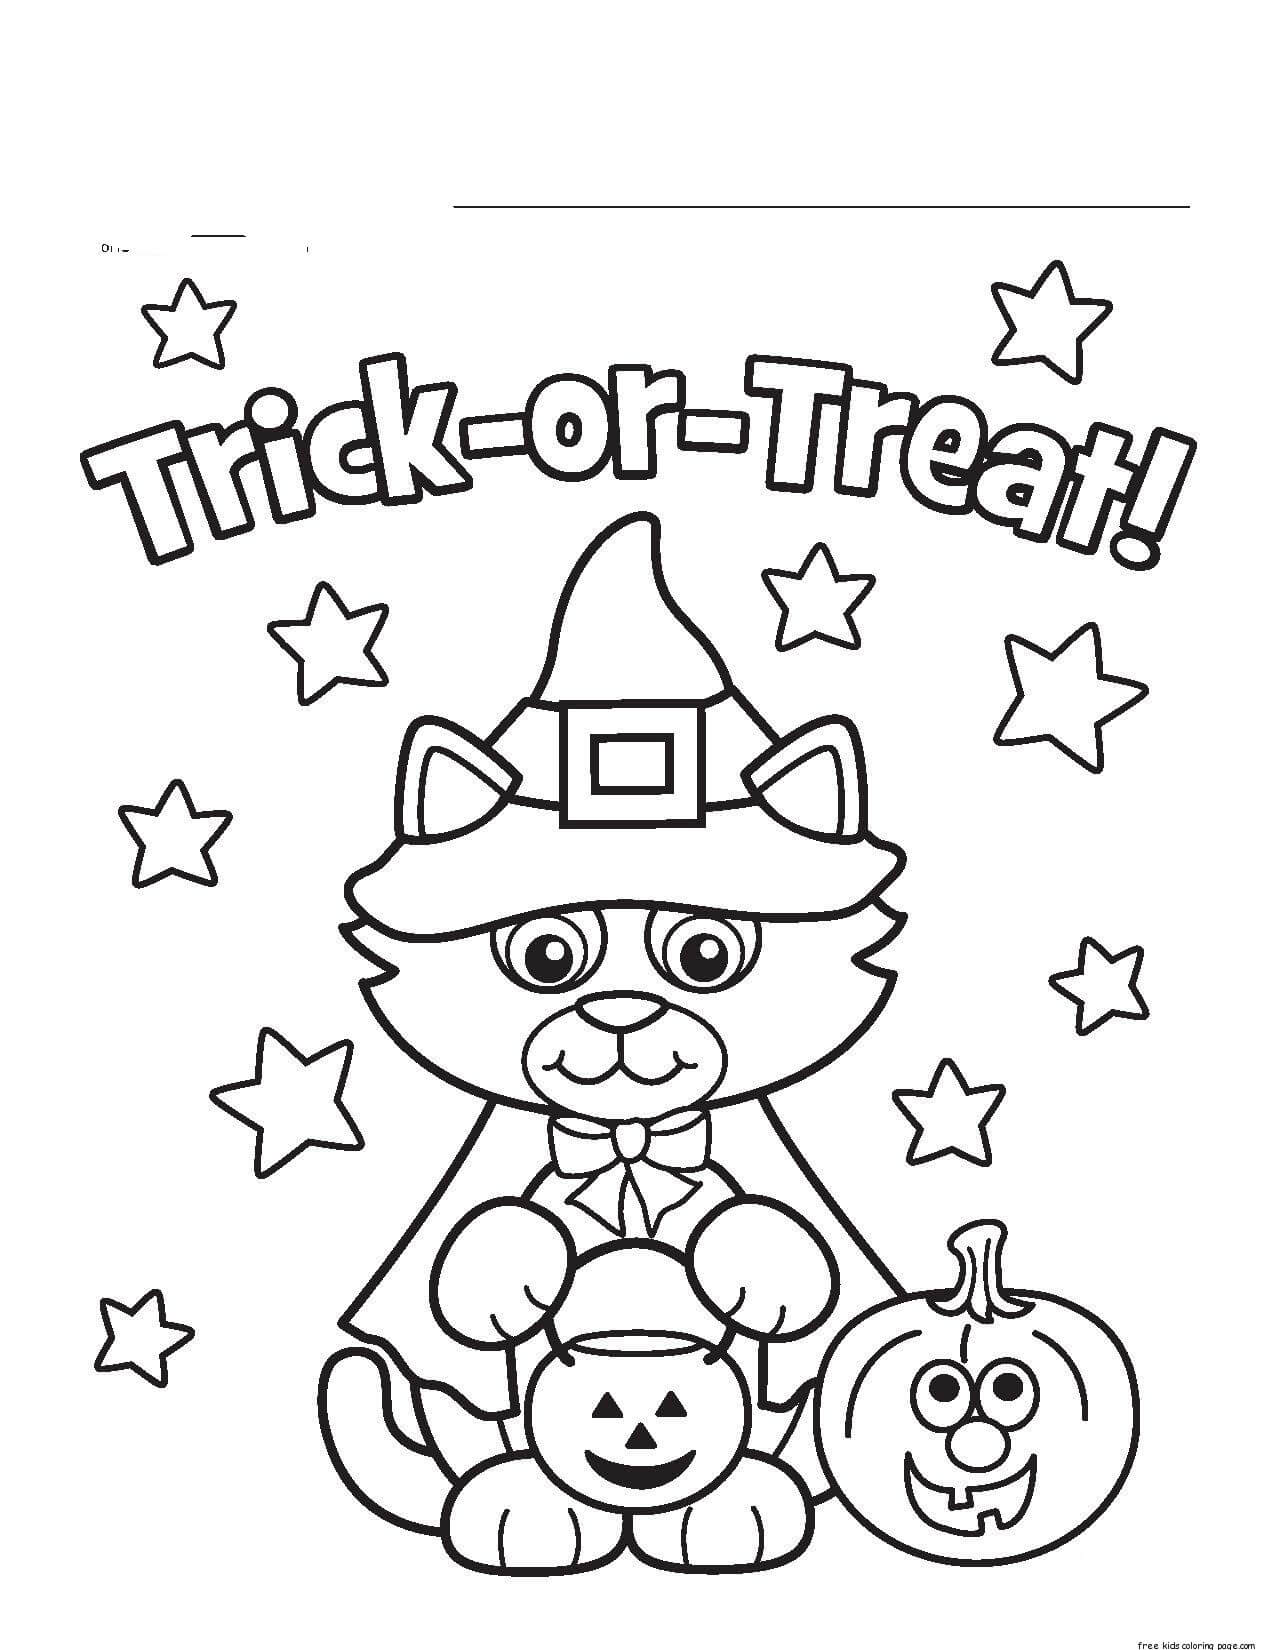 Trick or Treat met Kat de Heks